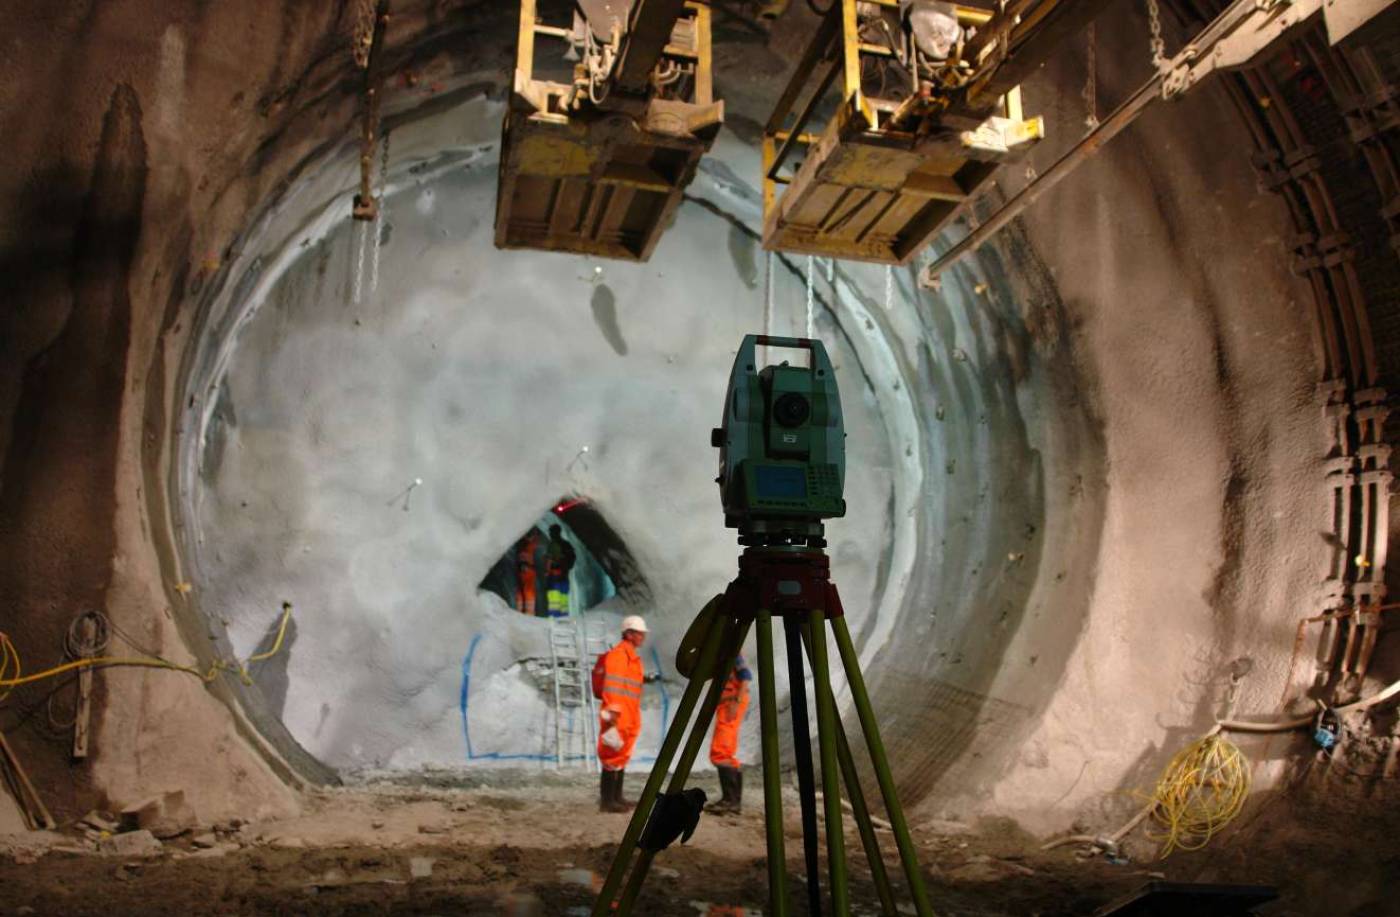 Gotthard-Basistunnel Bauherrenvermessung, Grundlagenvermessung, Konzept Tunnelvermessung, Lotungen im Schacht Sedrun, Überwachung von Deformationen, Expertisen zur Risikominimierung, Kreiselmessungen, Kontrolle der Gleislage, Kontrolle des Rohbaus mittels Präzisionslaserscanning